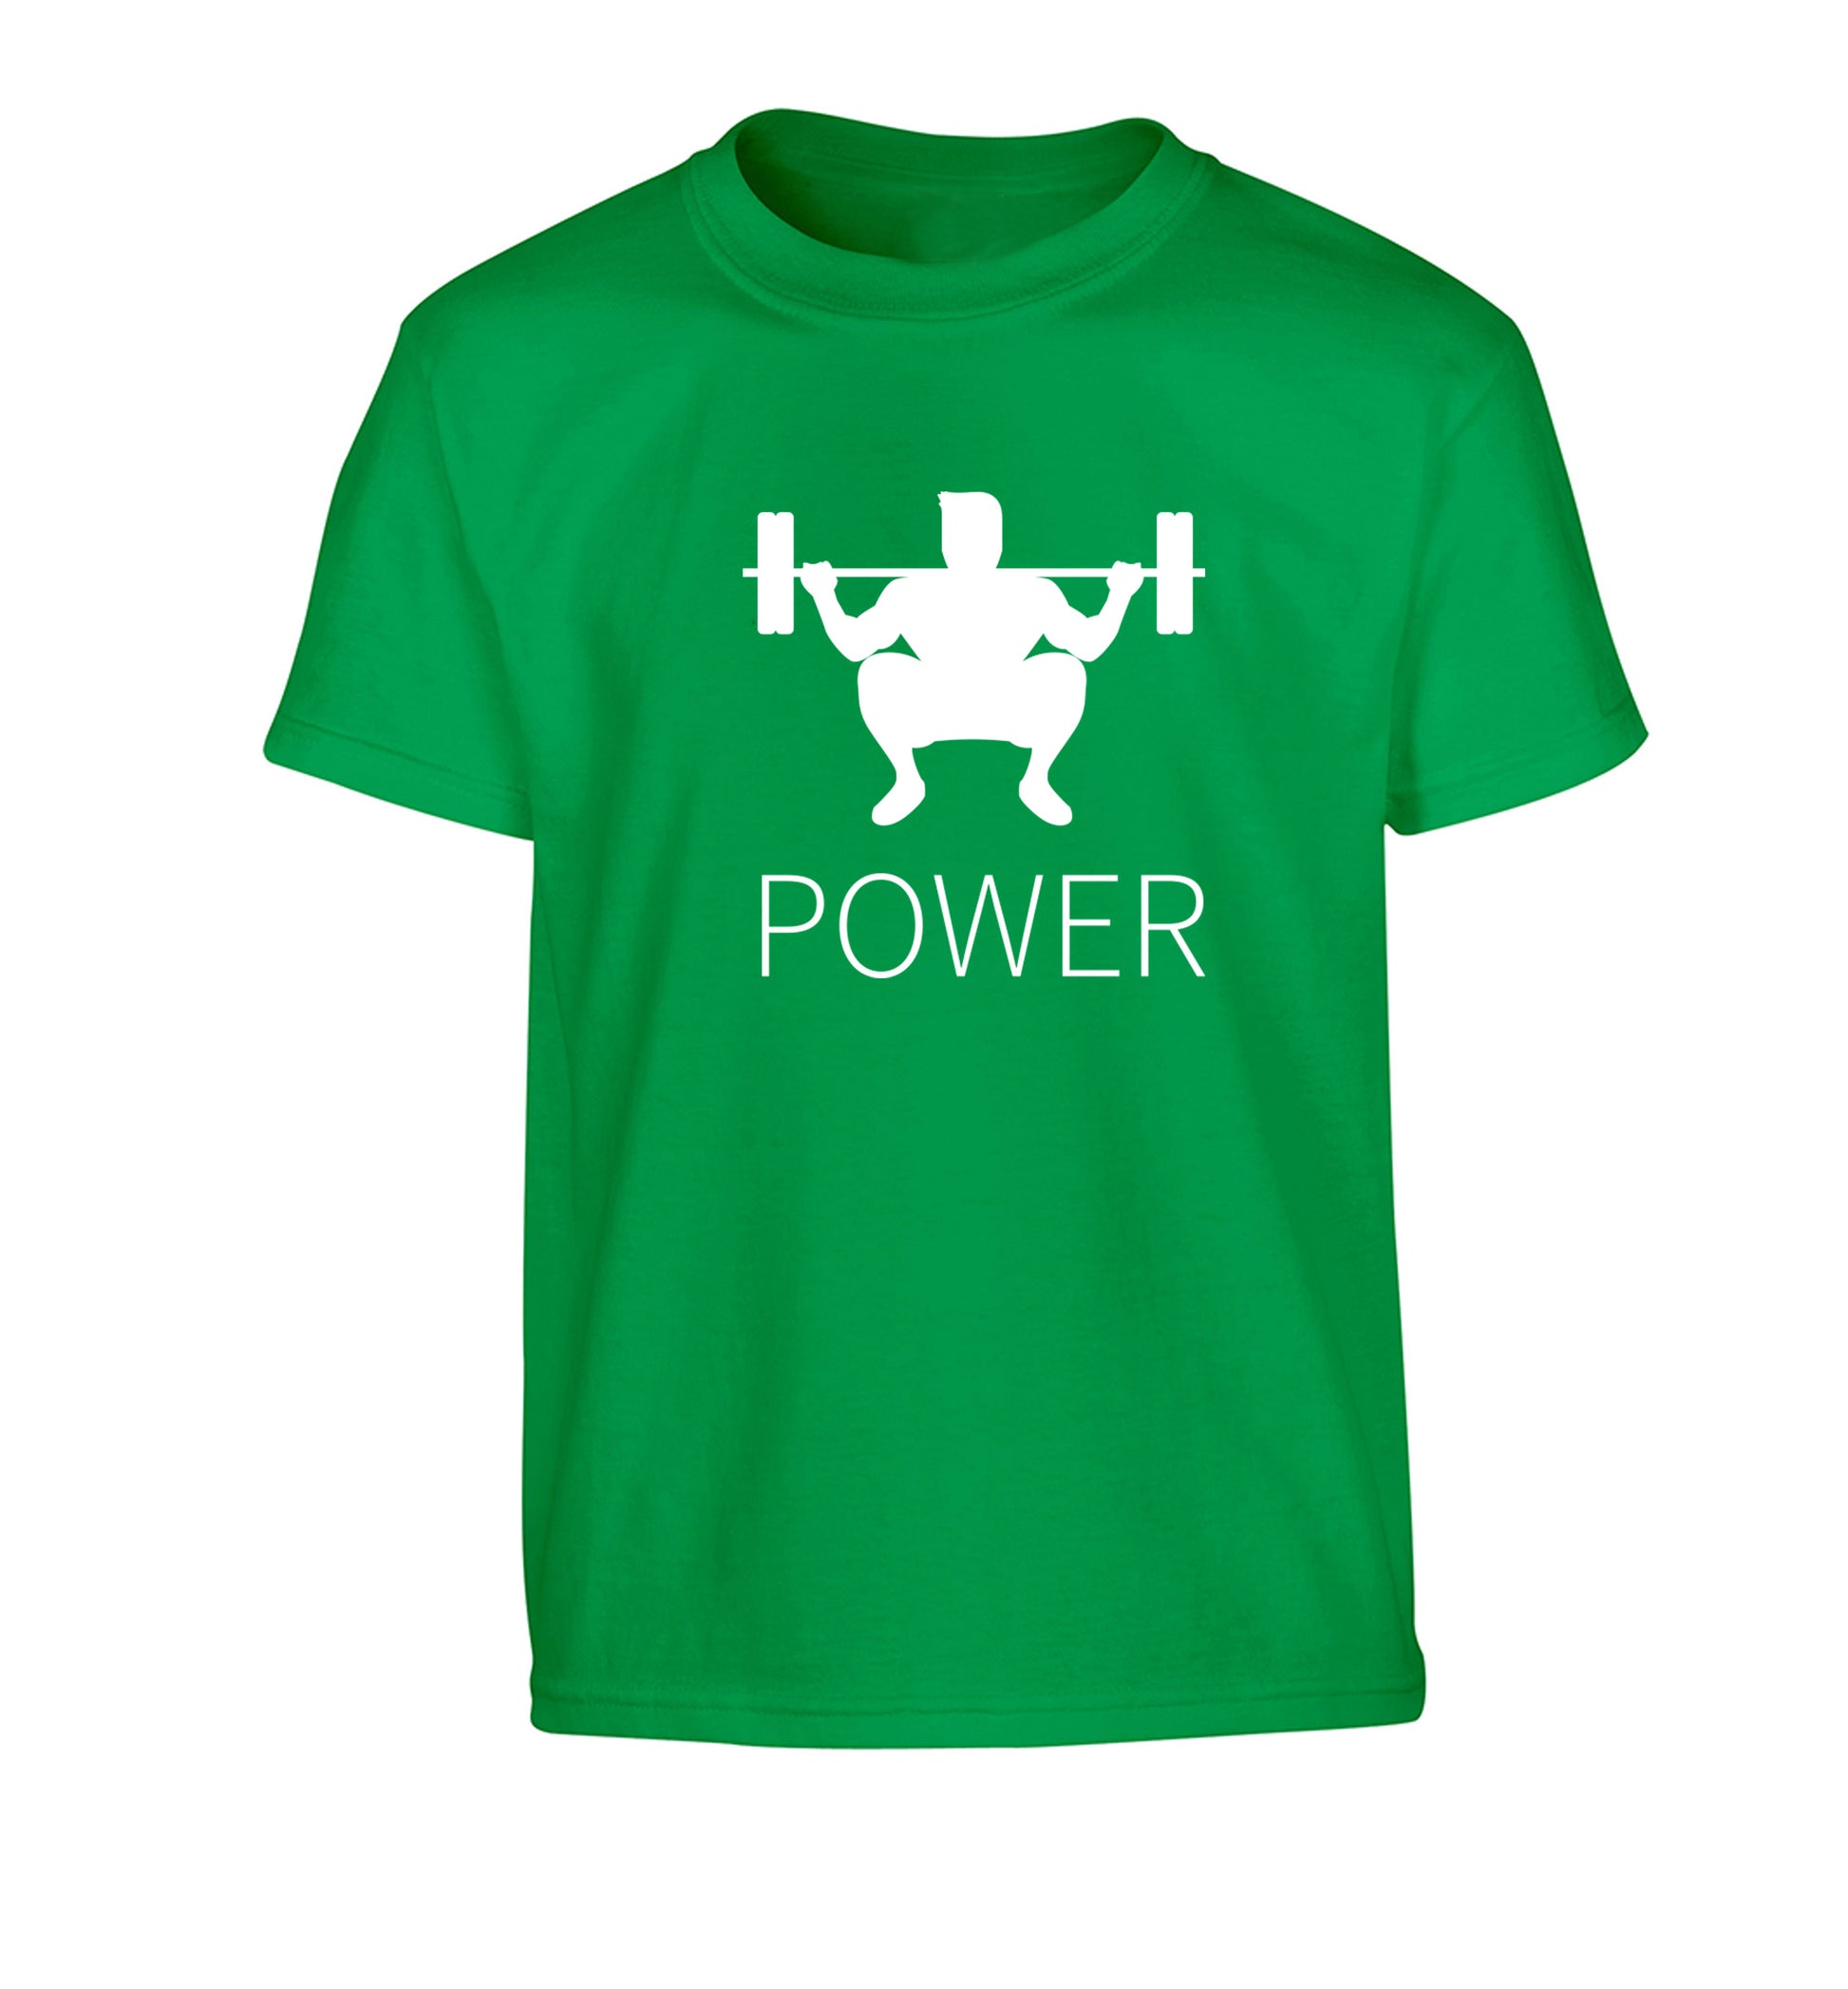 Lift power Children's green Tshirt 12-13 Years